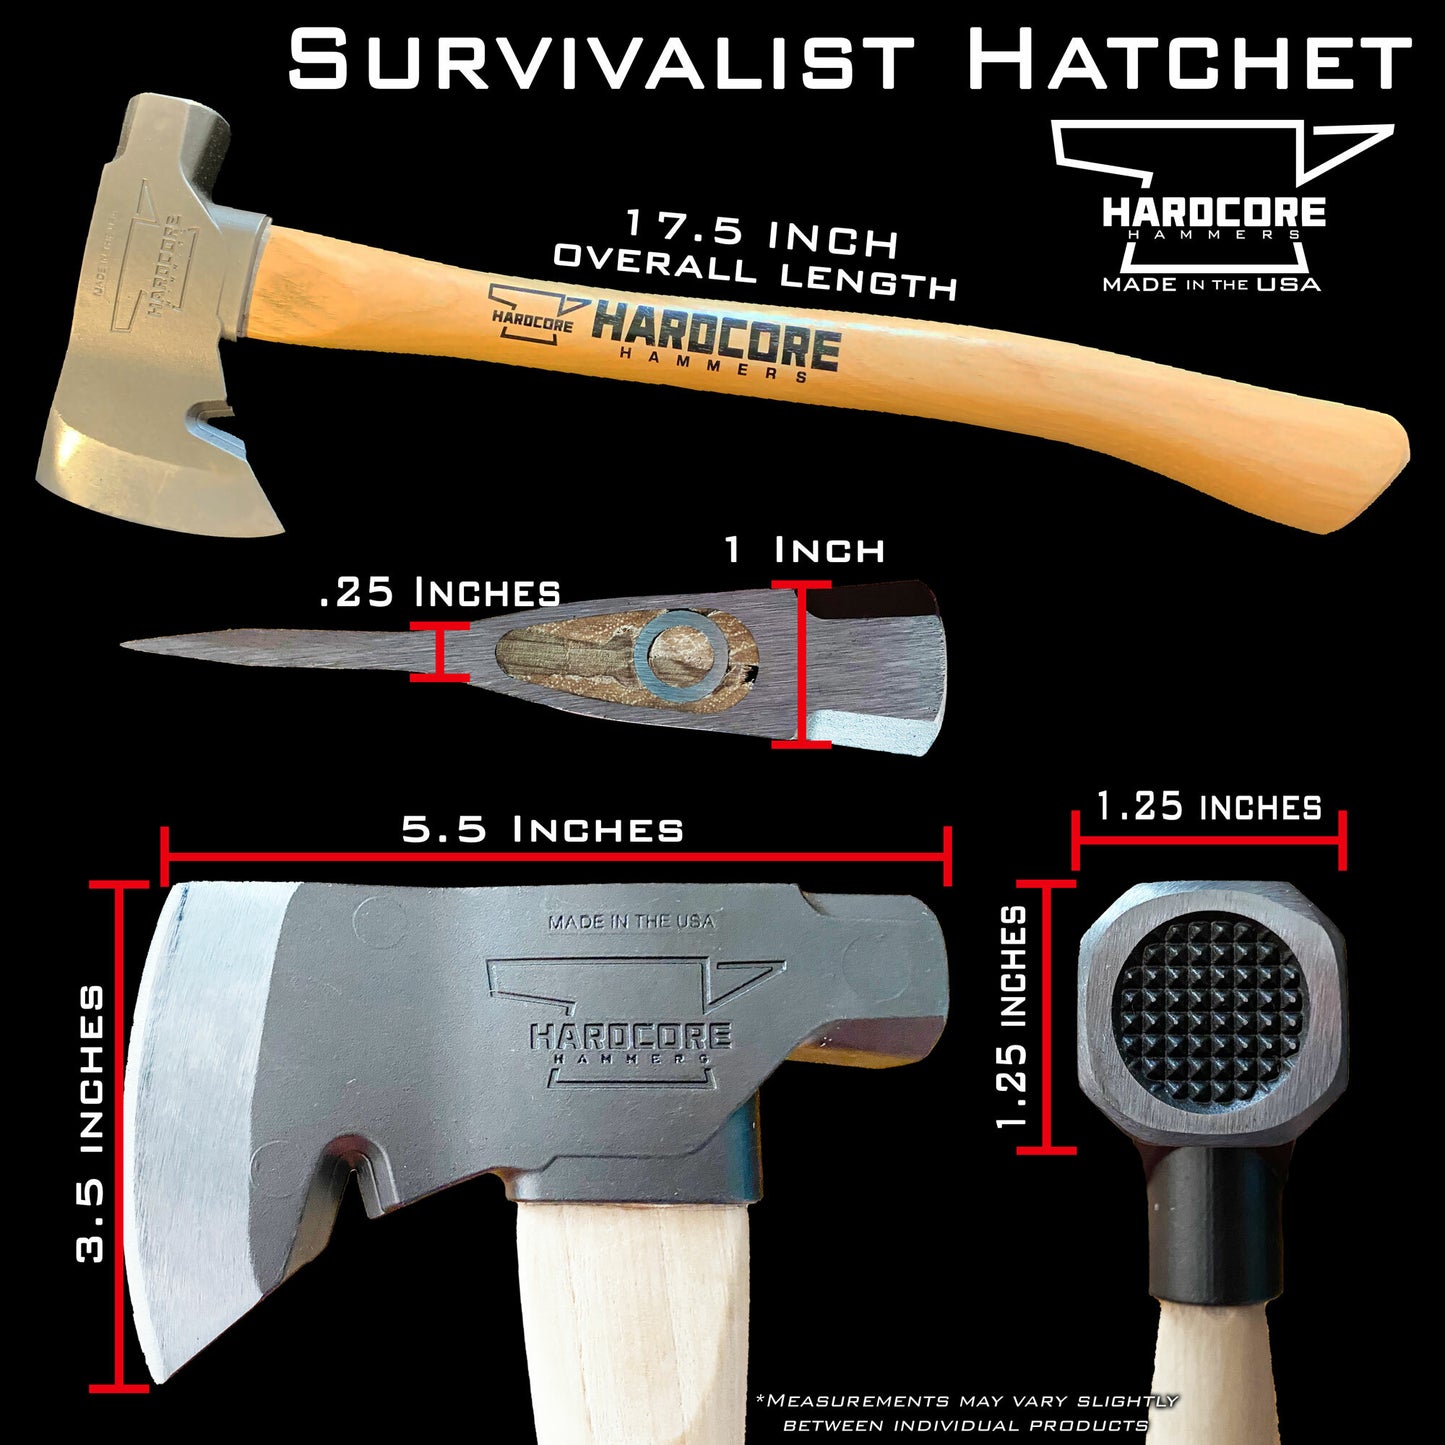 The Blackout Survivalist Hatchet